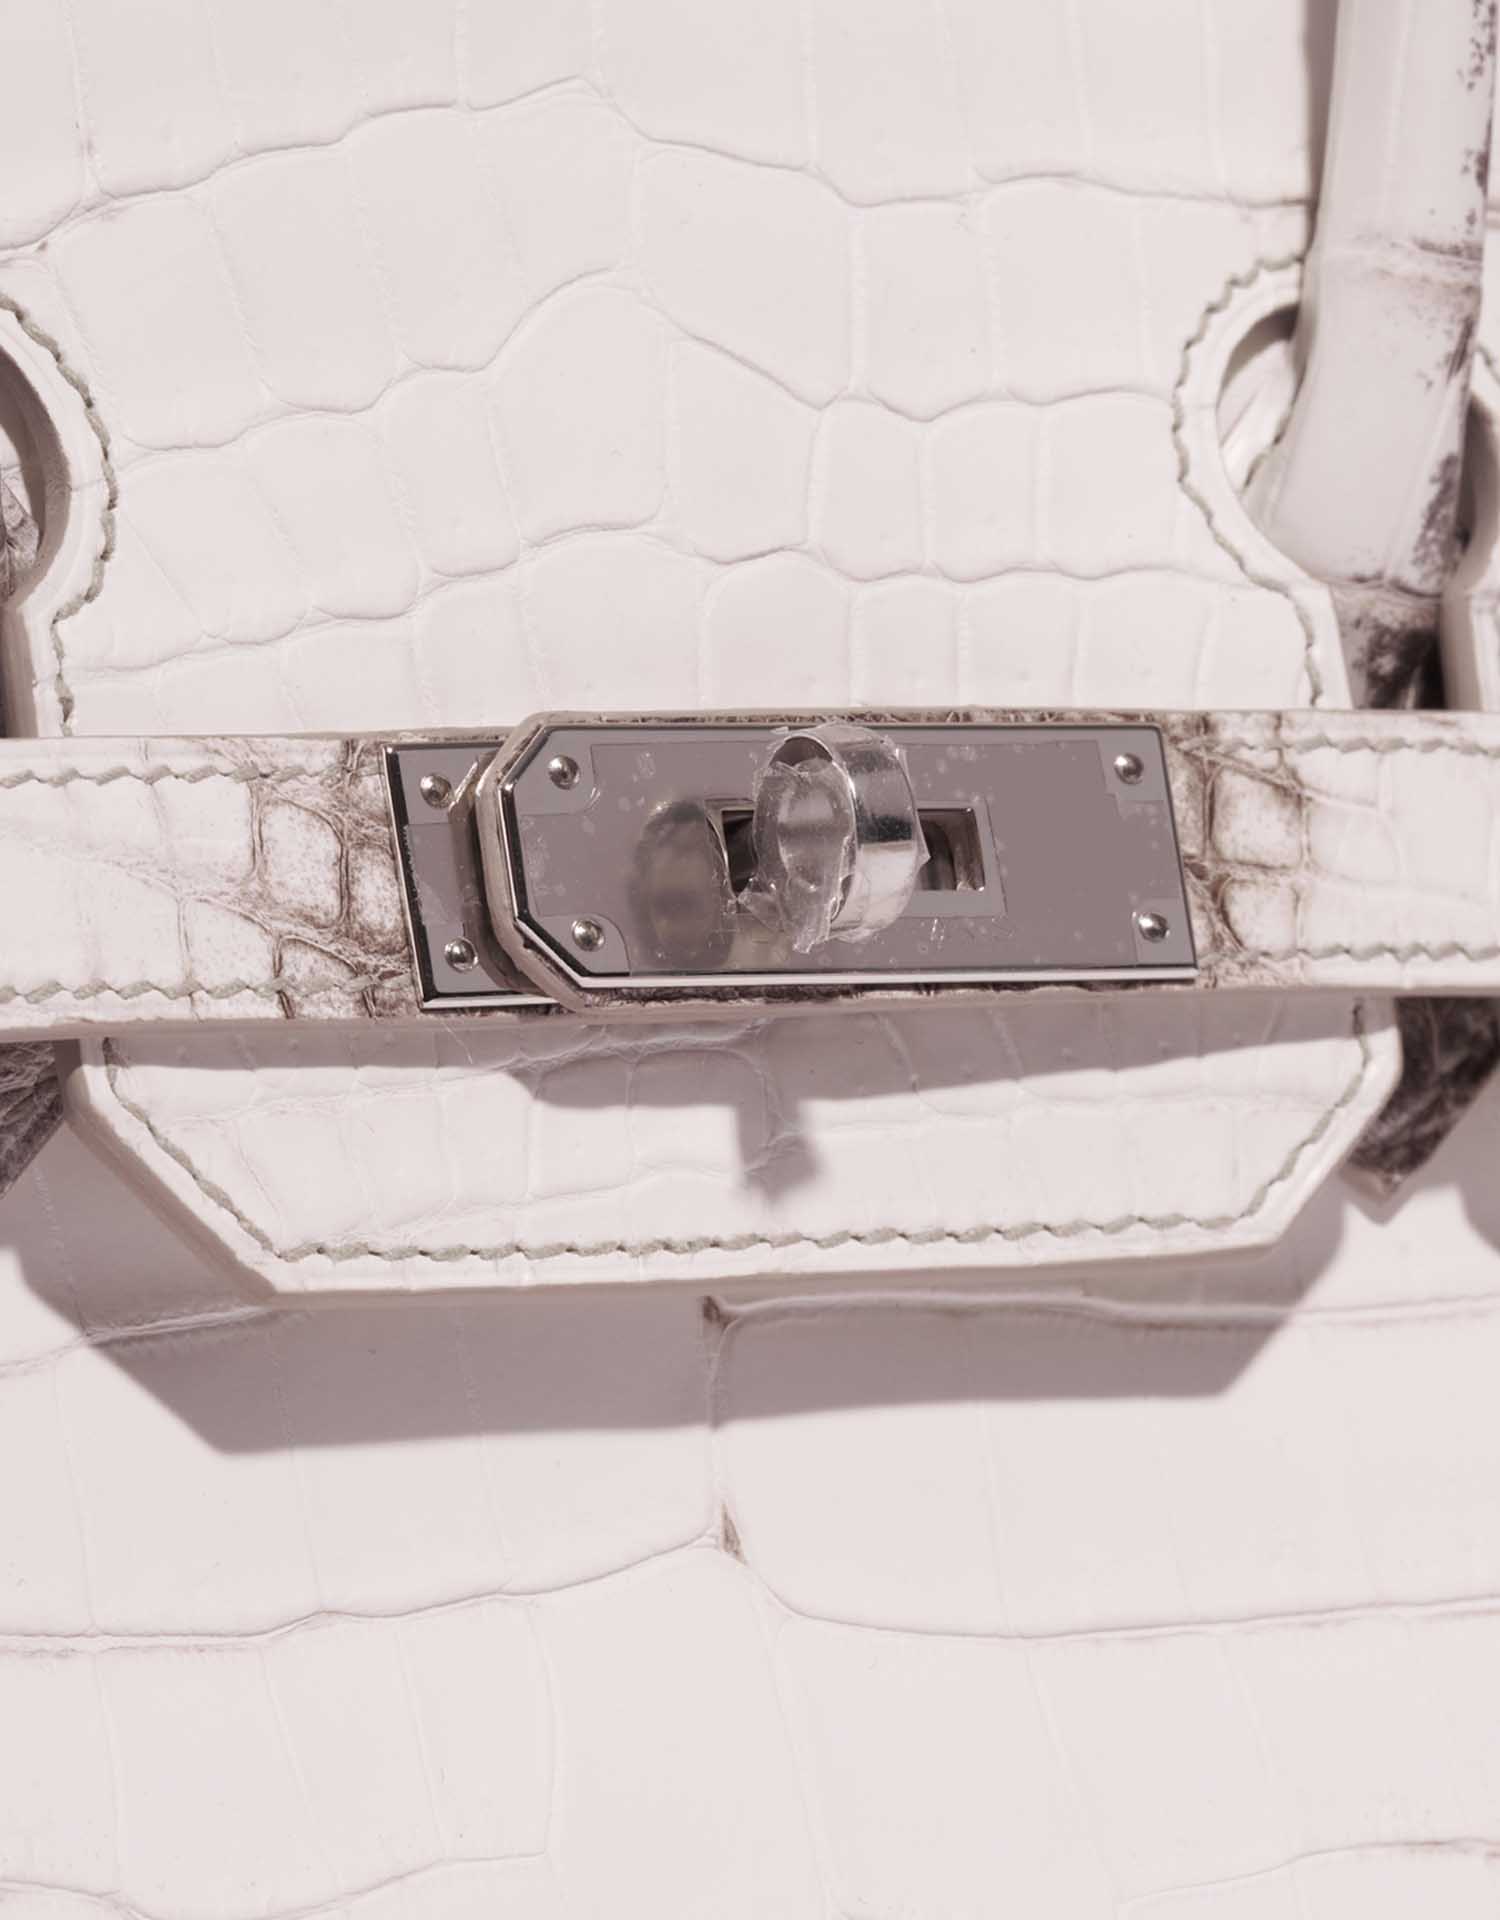 Hermès Birkin 30 Niloticus Himalayan Blanc bag